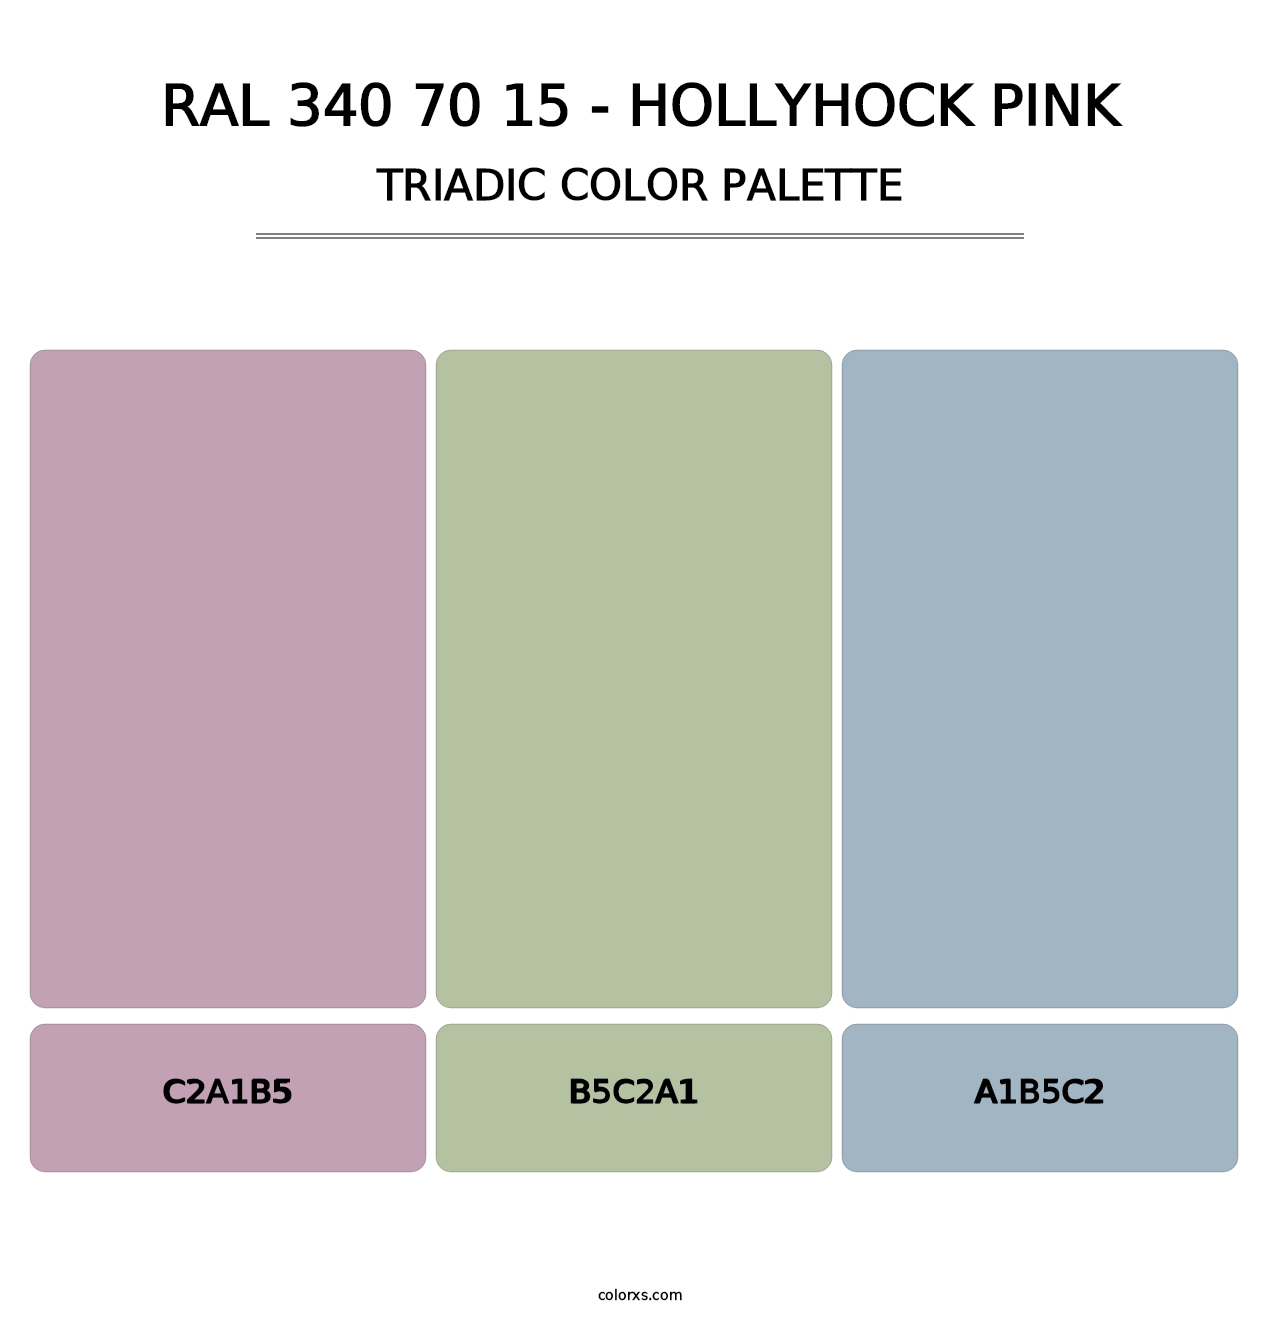 RAL 340 70 15 - Hollyhock Pink - Triadic Color Palette